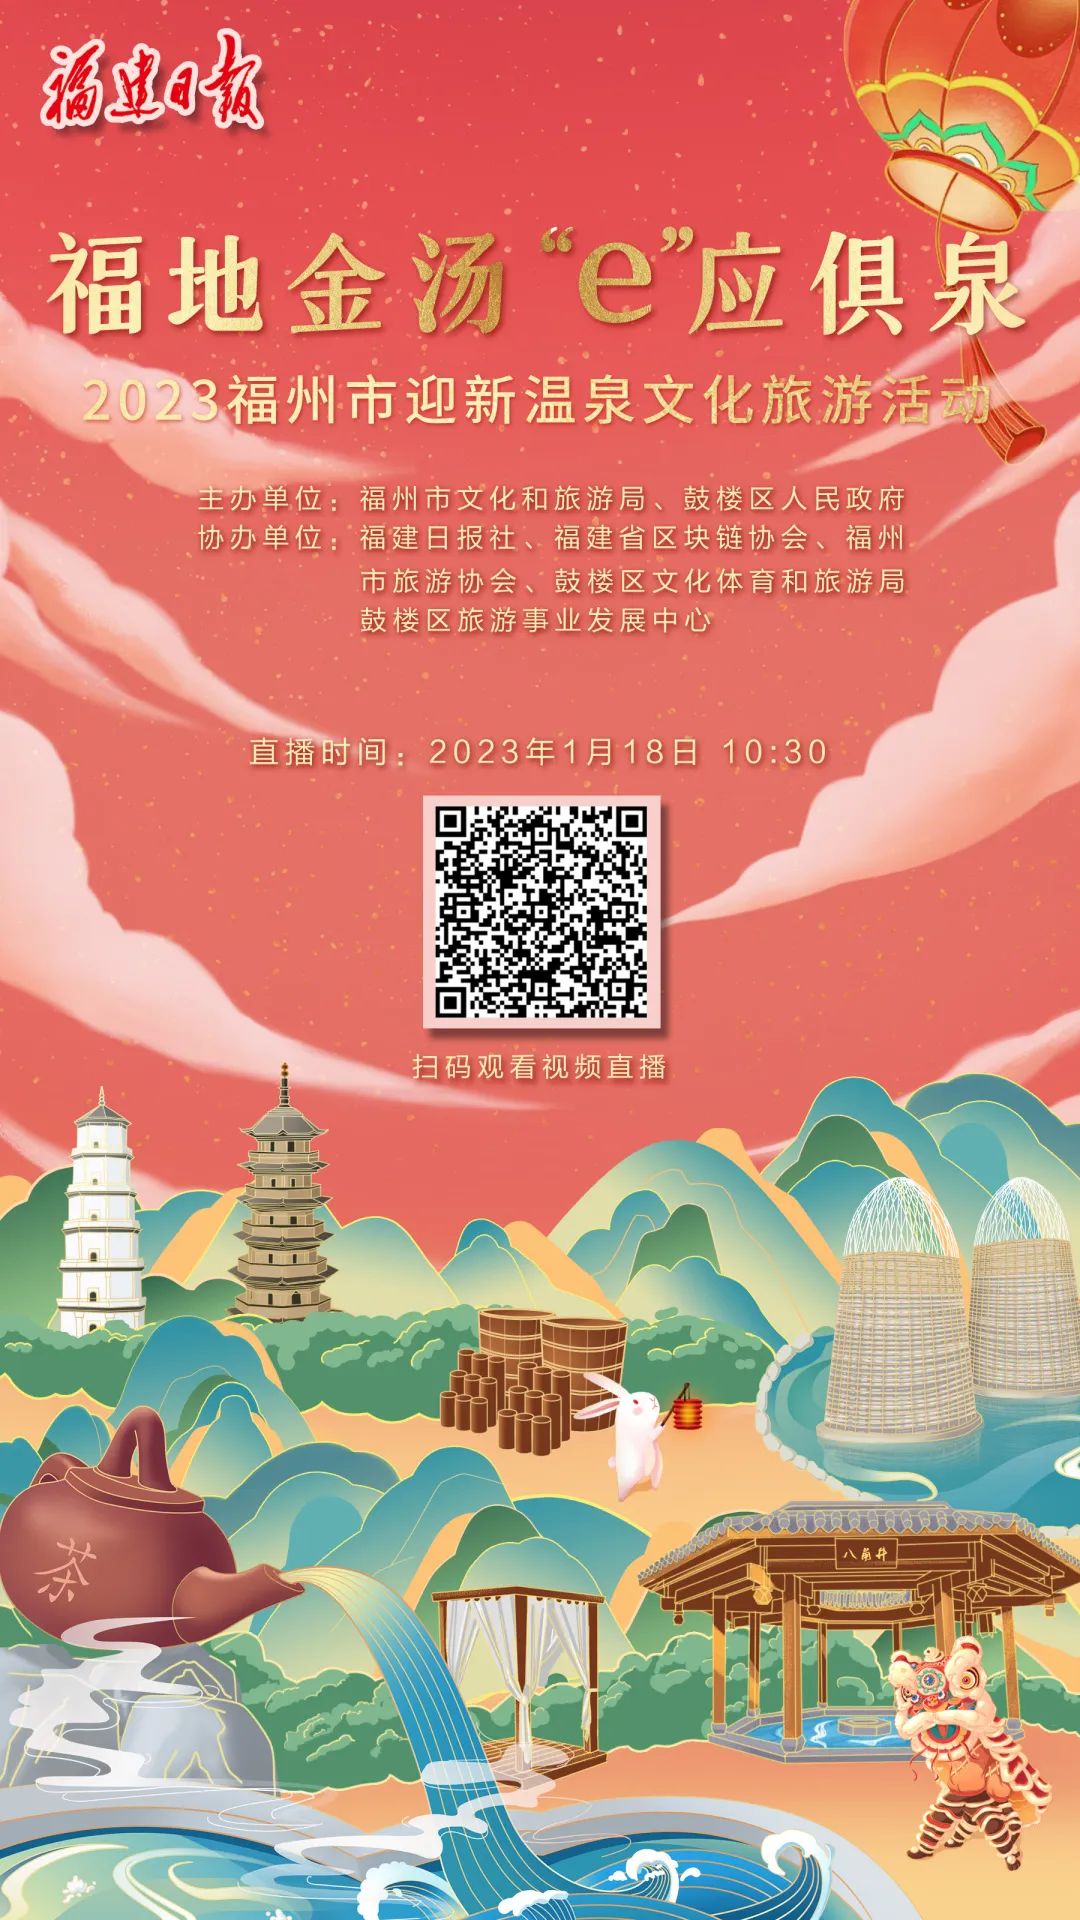 就在明天！福州迎新温泉文化旅游活动即将启幕！